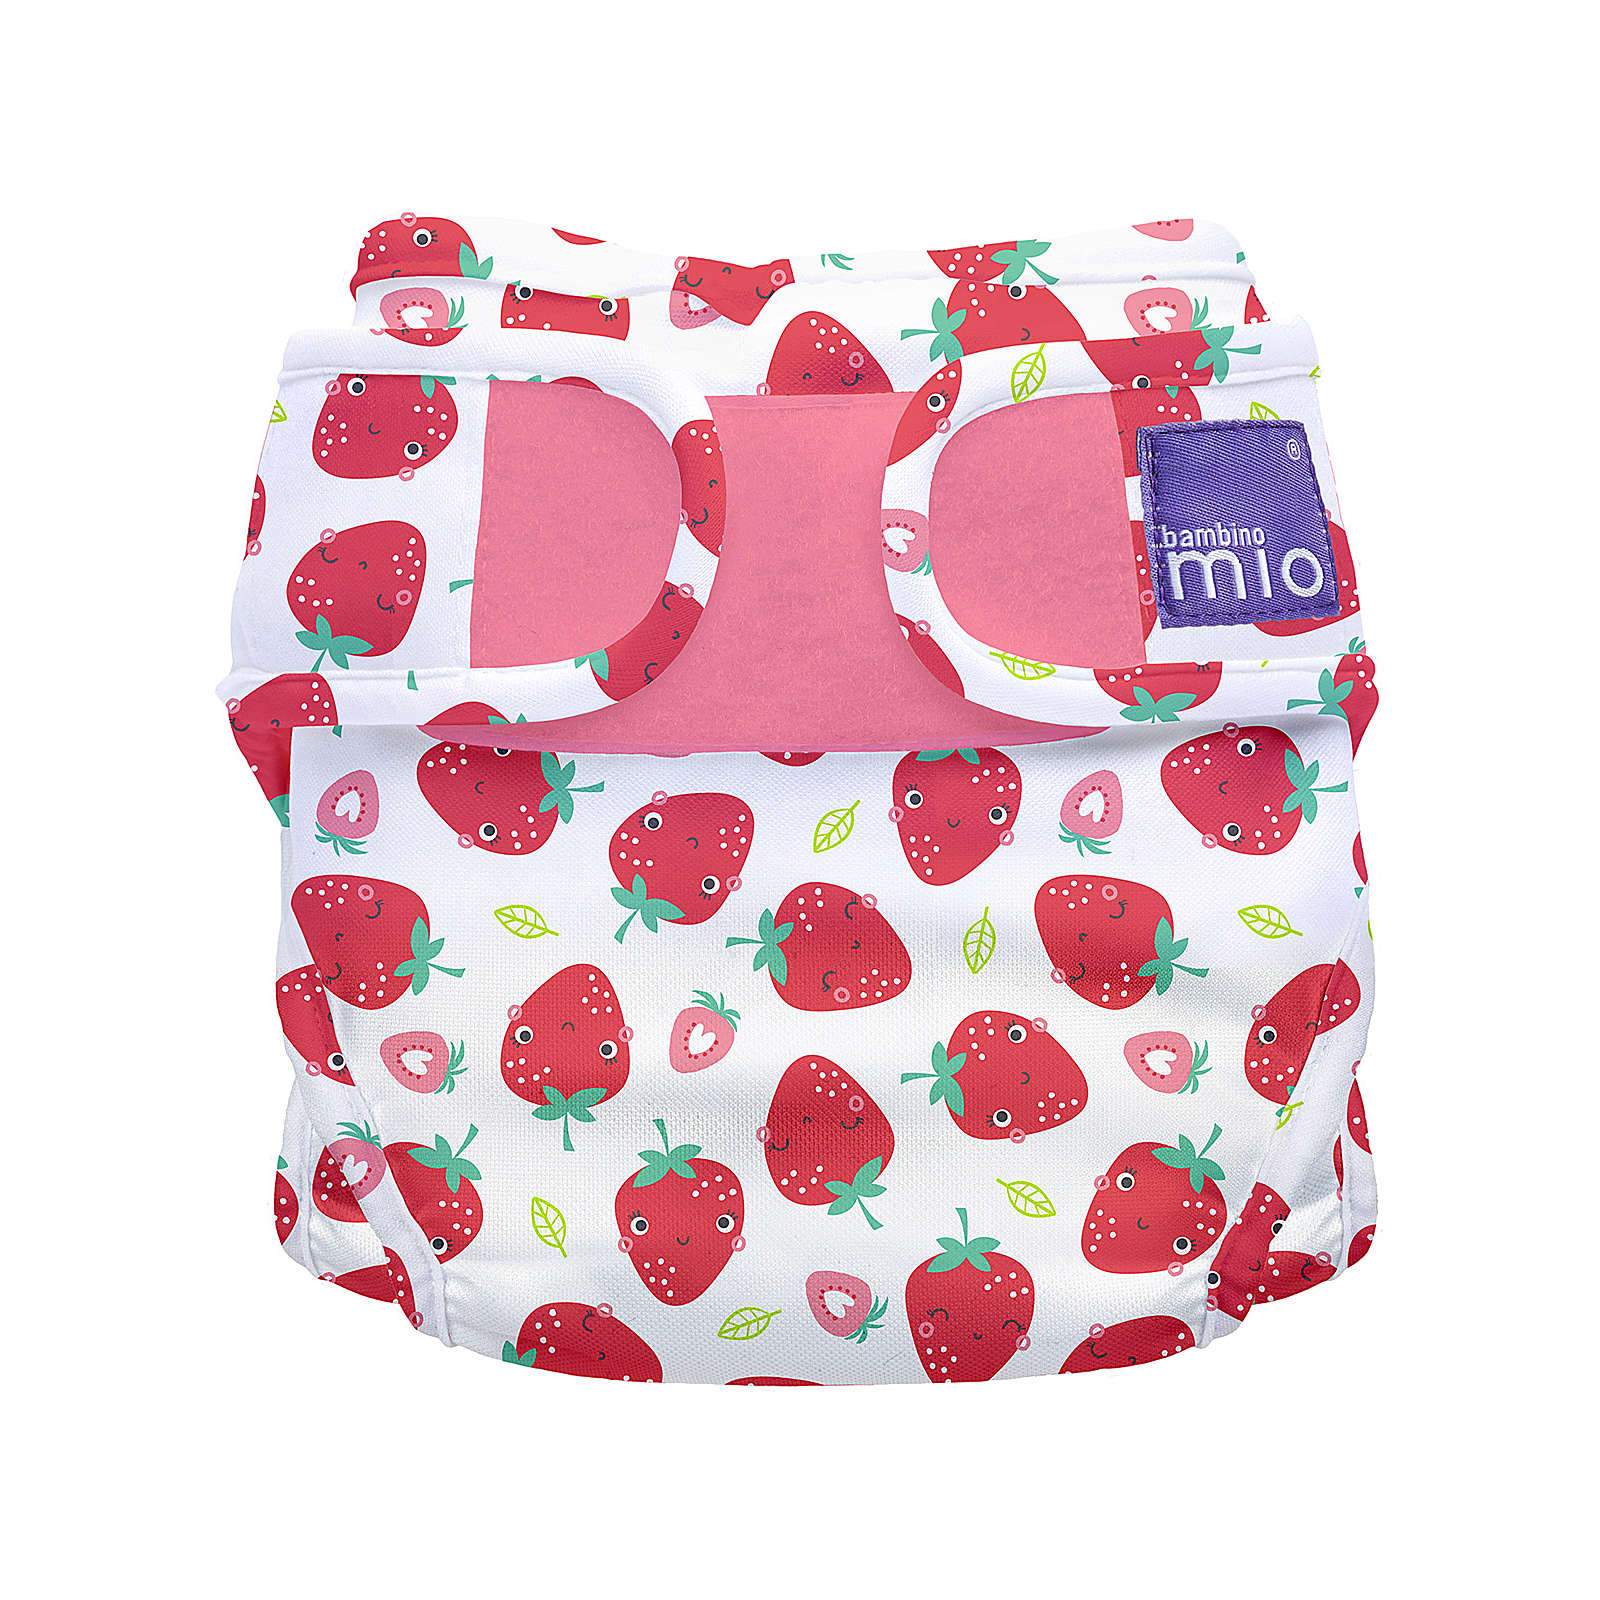 Bambino Mio Windelüberhose Mioduo - Erfrischende Erdbeere, 0-6 Monate rot